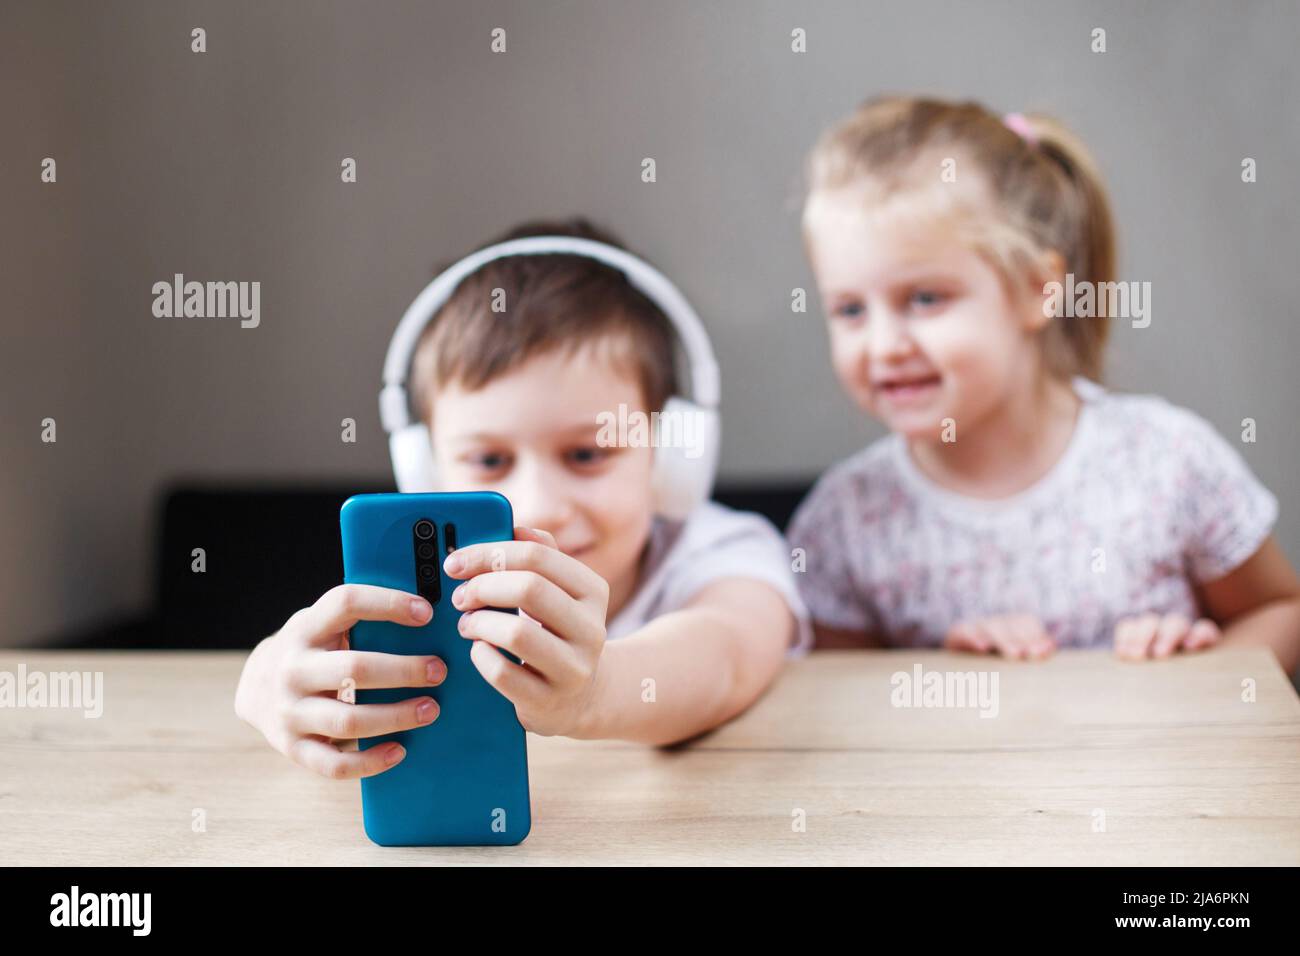 due bambini che giocano sullo smartphone con le cuffie. persone, bambini e tecnologia concetto - bambini con il cellulare prendere selfie o avere videochiamata a Foto Stock